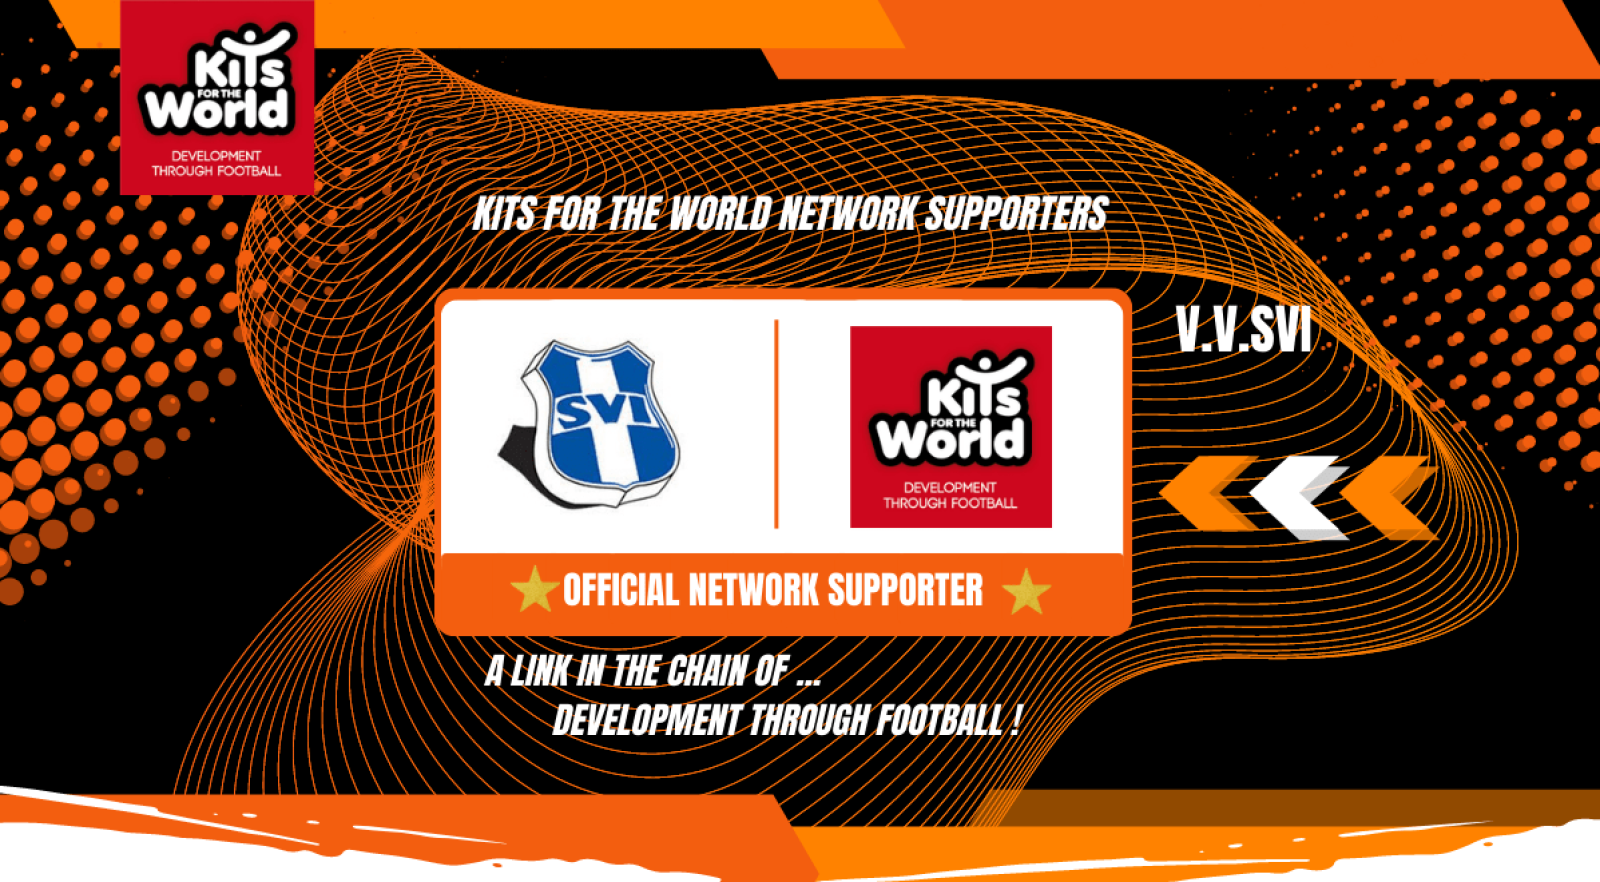 V.V.SVI _official NETWORK SUPPORTER _Kits for the World